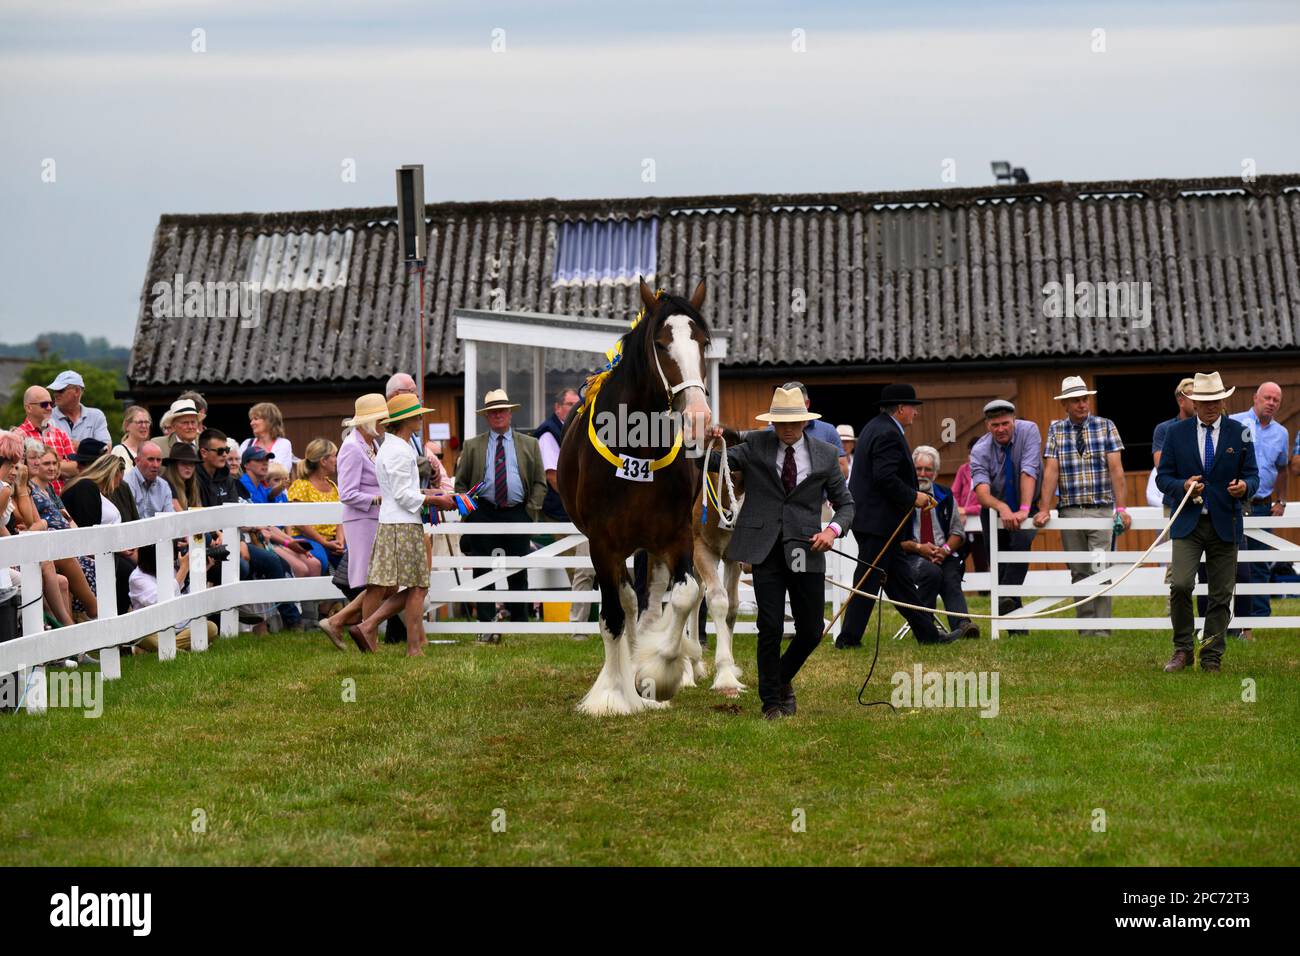 Les grands chevaux de la baie shire marchent avec des maîtres pour juger, observer les spectateurs (cheval de travail et géant doux) - Great Yorkshire Show, Harrogate, Angleterre, Royaume-Uni. Banque D'Images